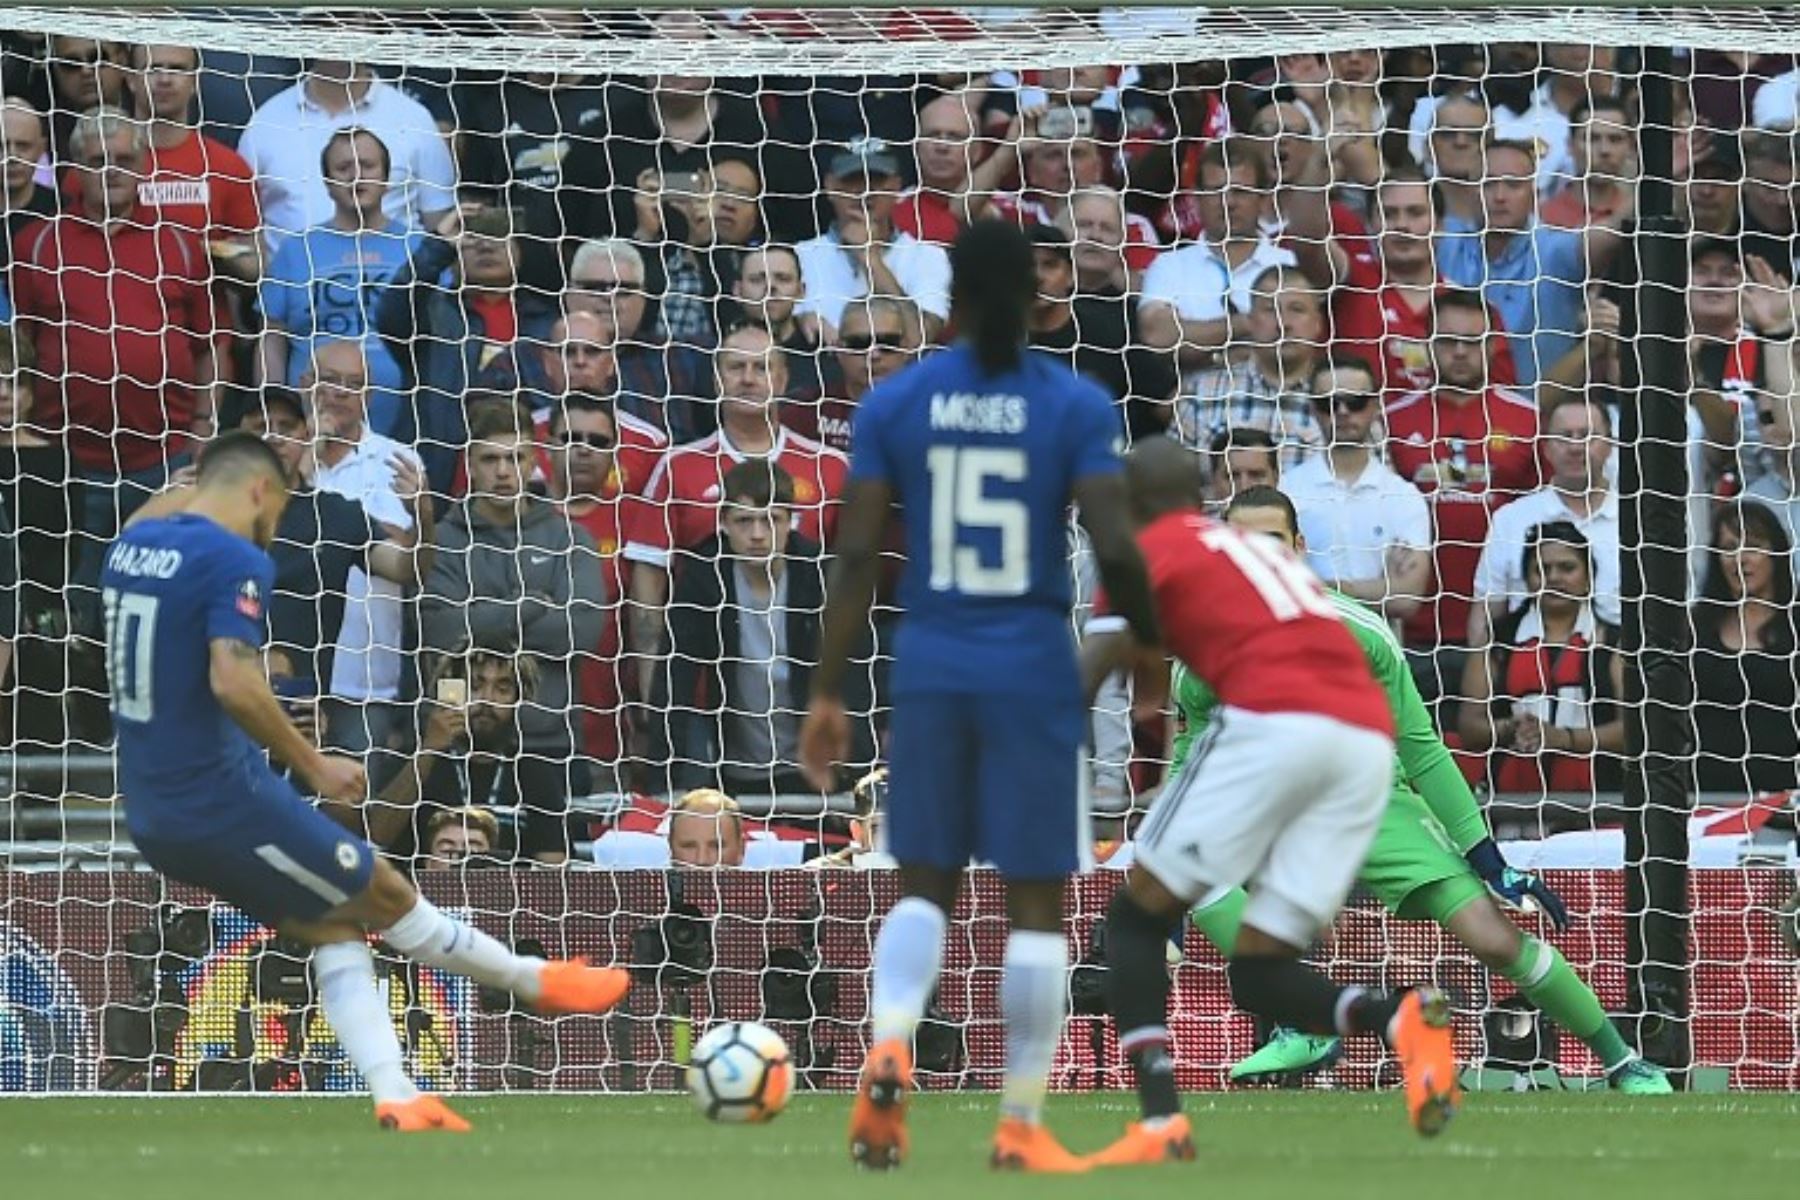 El centrocampista belga del Chelsea Eden Hazard  anota el gol de apertura desde el punto de penalti durante el partido de fútbol final de la FA Cup inglesa entre Chelsea y Manchester.Foto:AFP